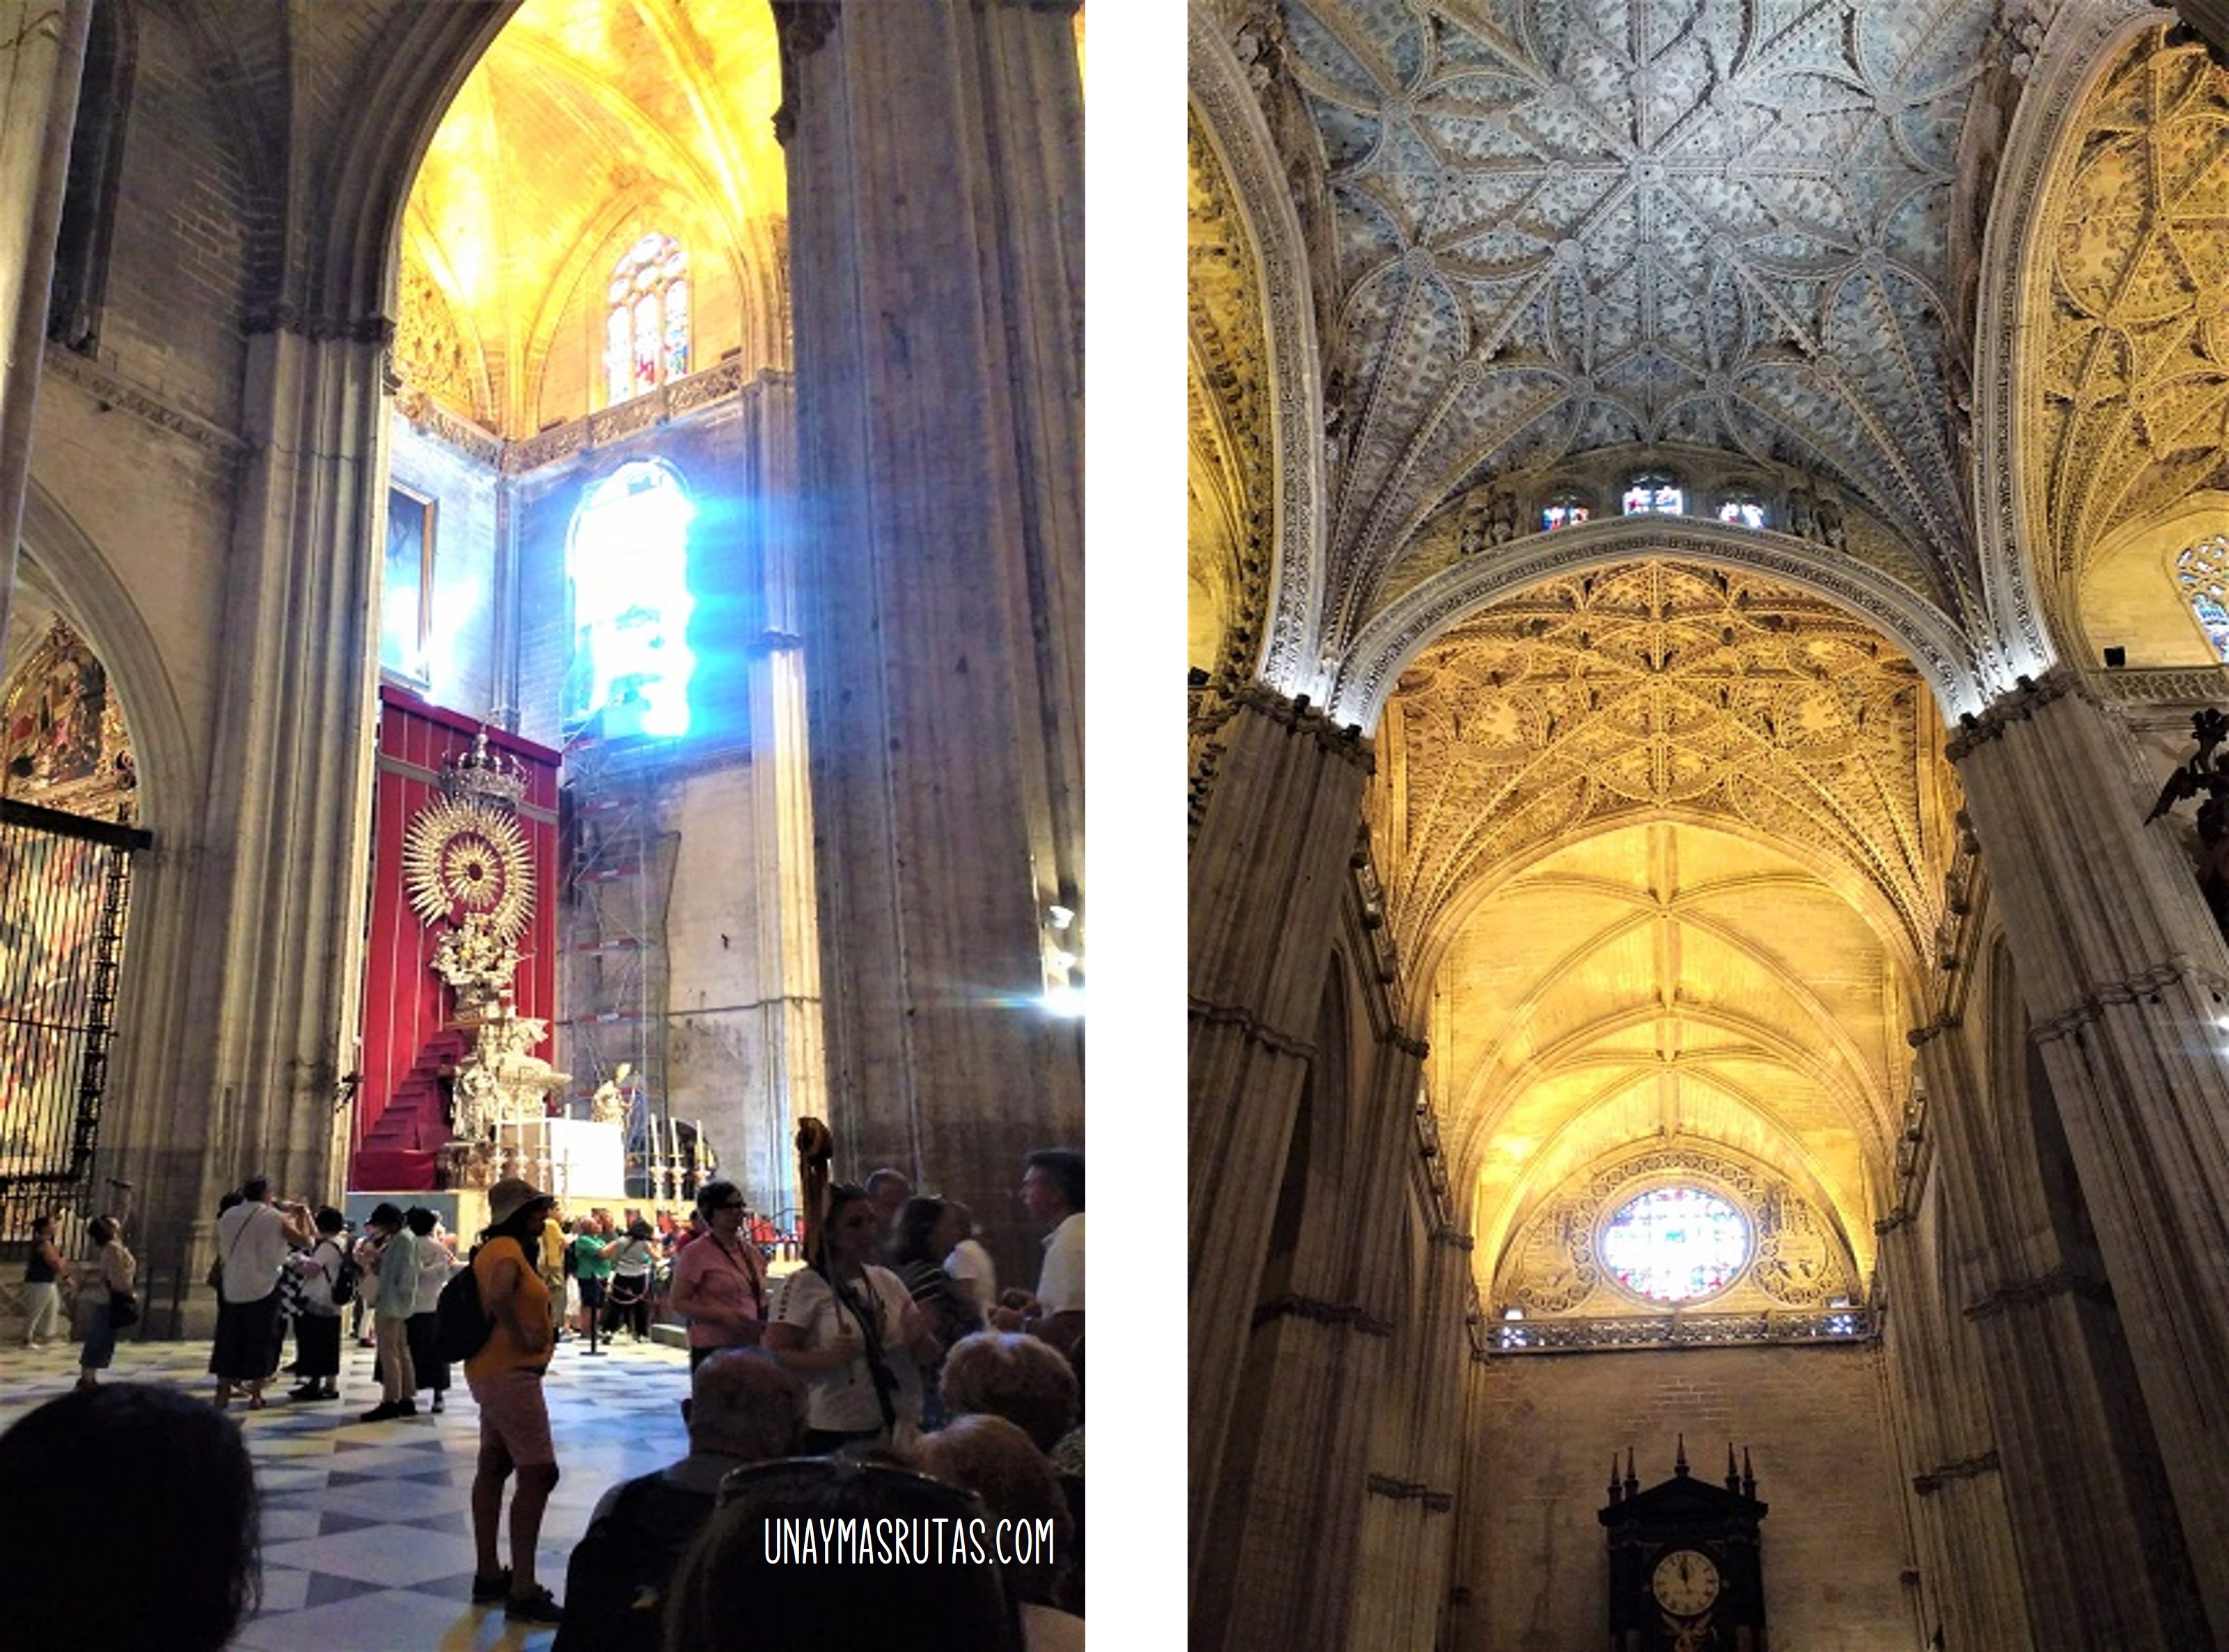 Catedral de Sevilla Interior unaymasrutas